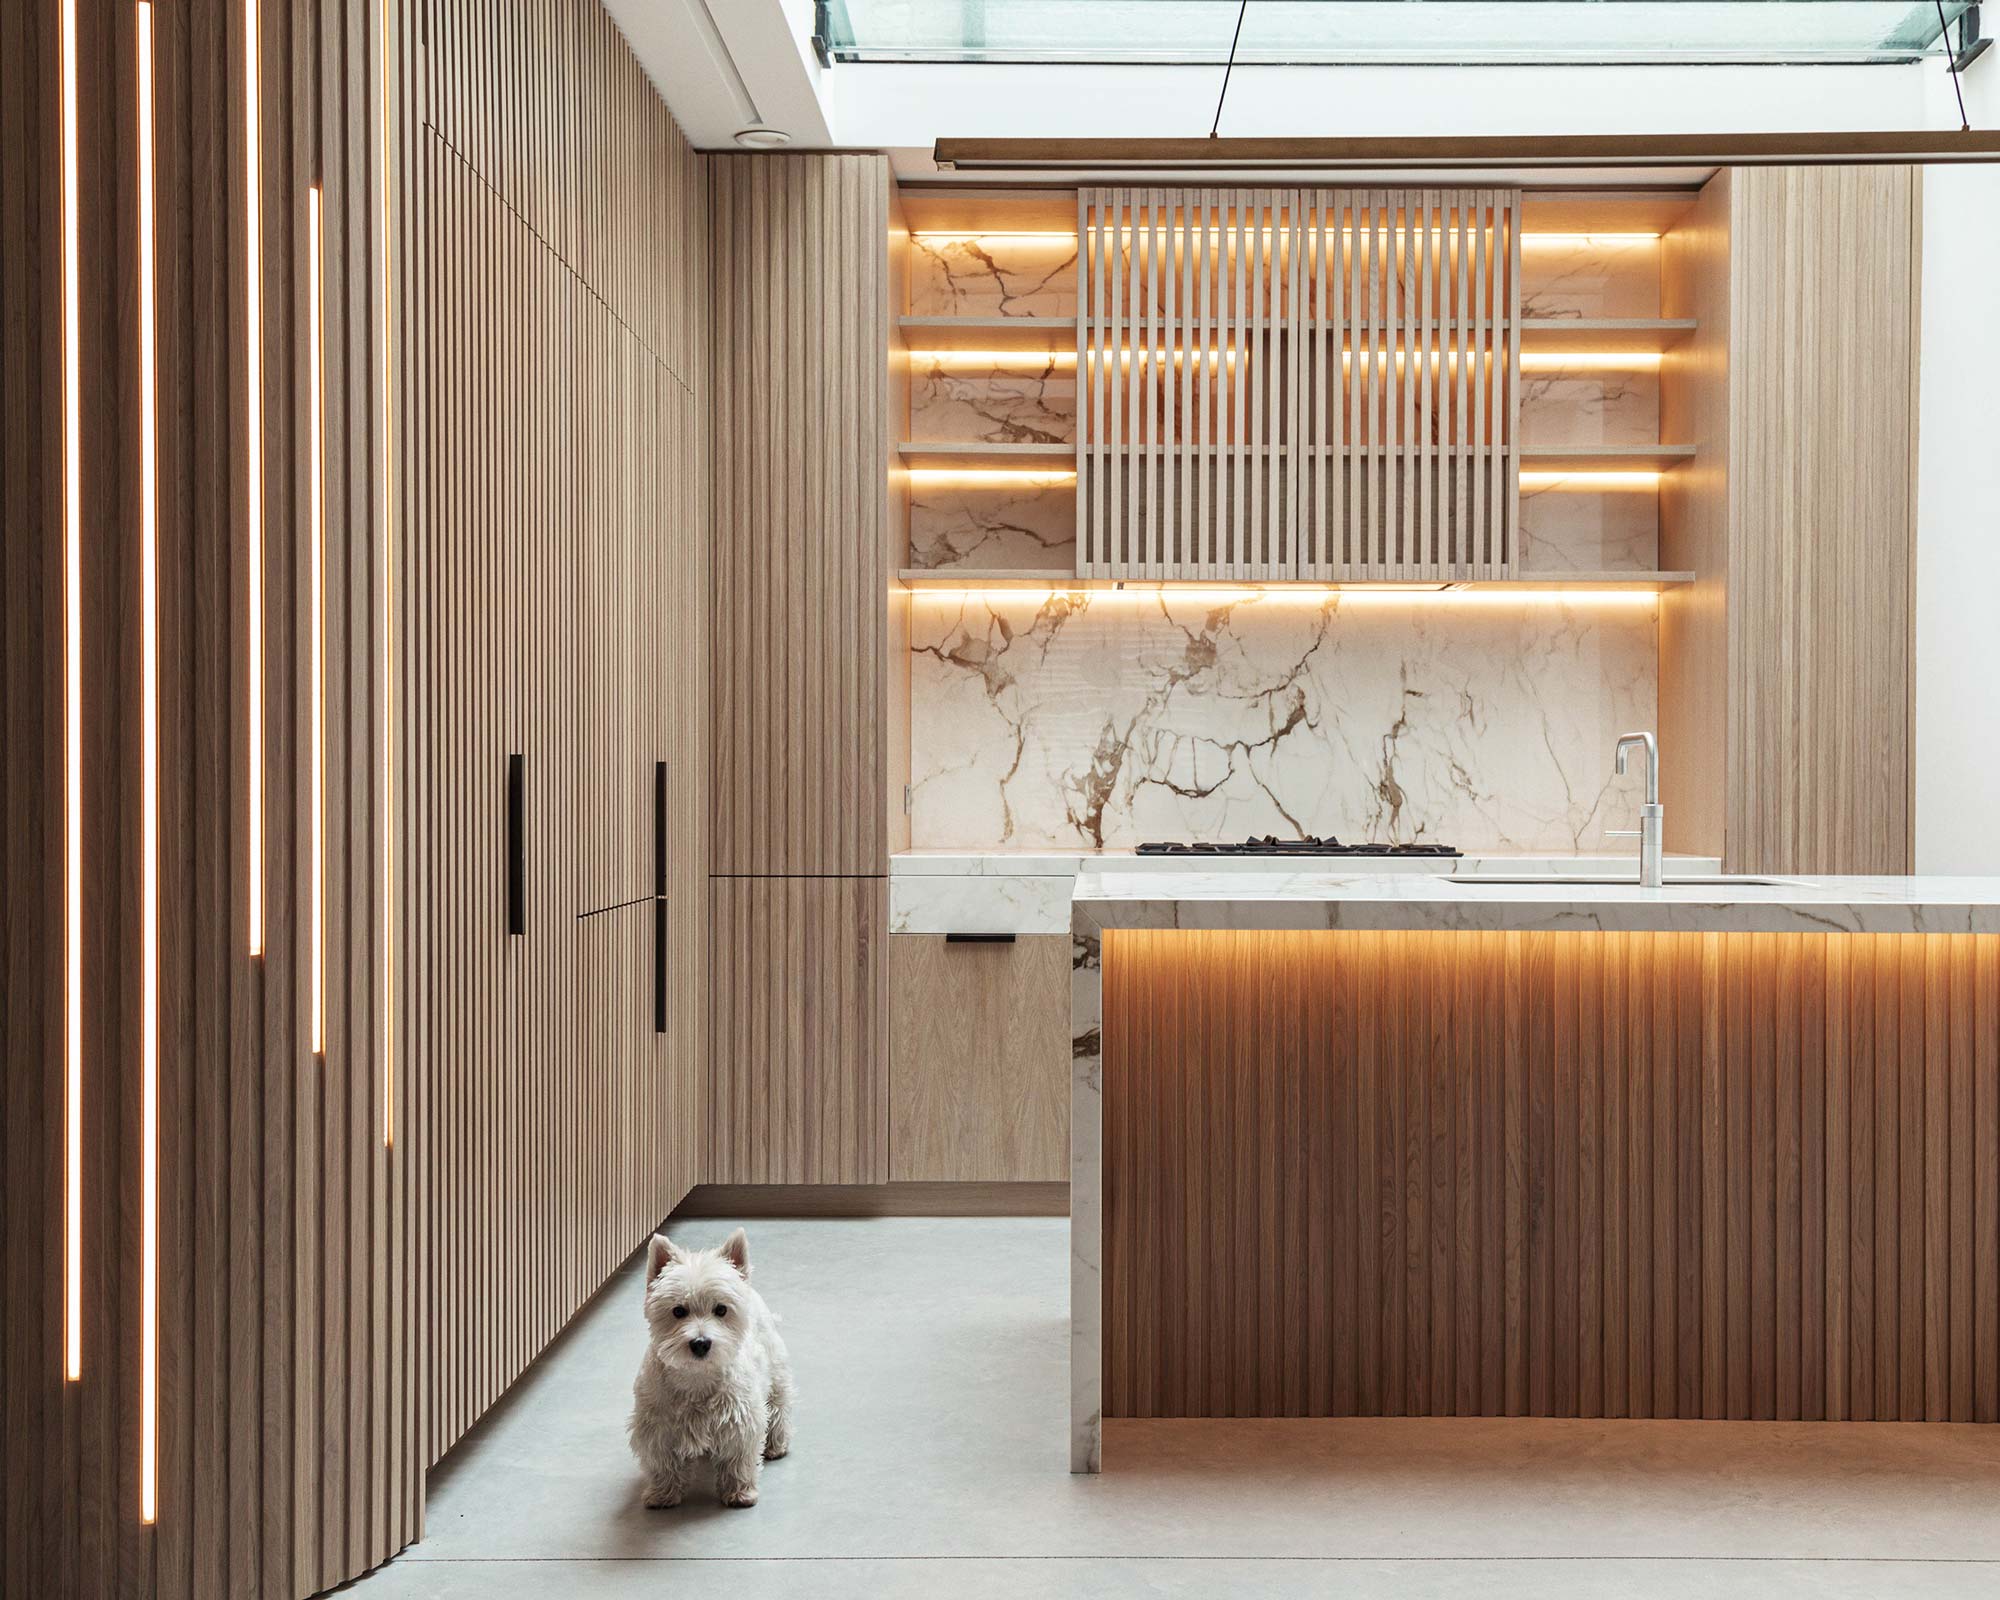 Luxury bespoke timber and stone kitchen portobello road kensington interior